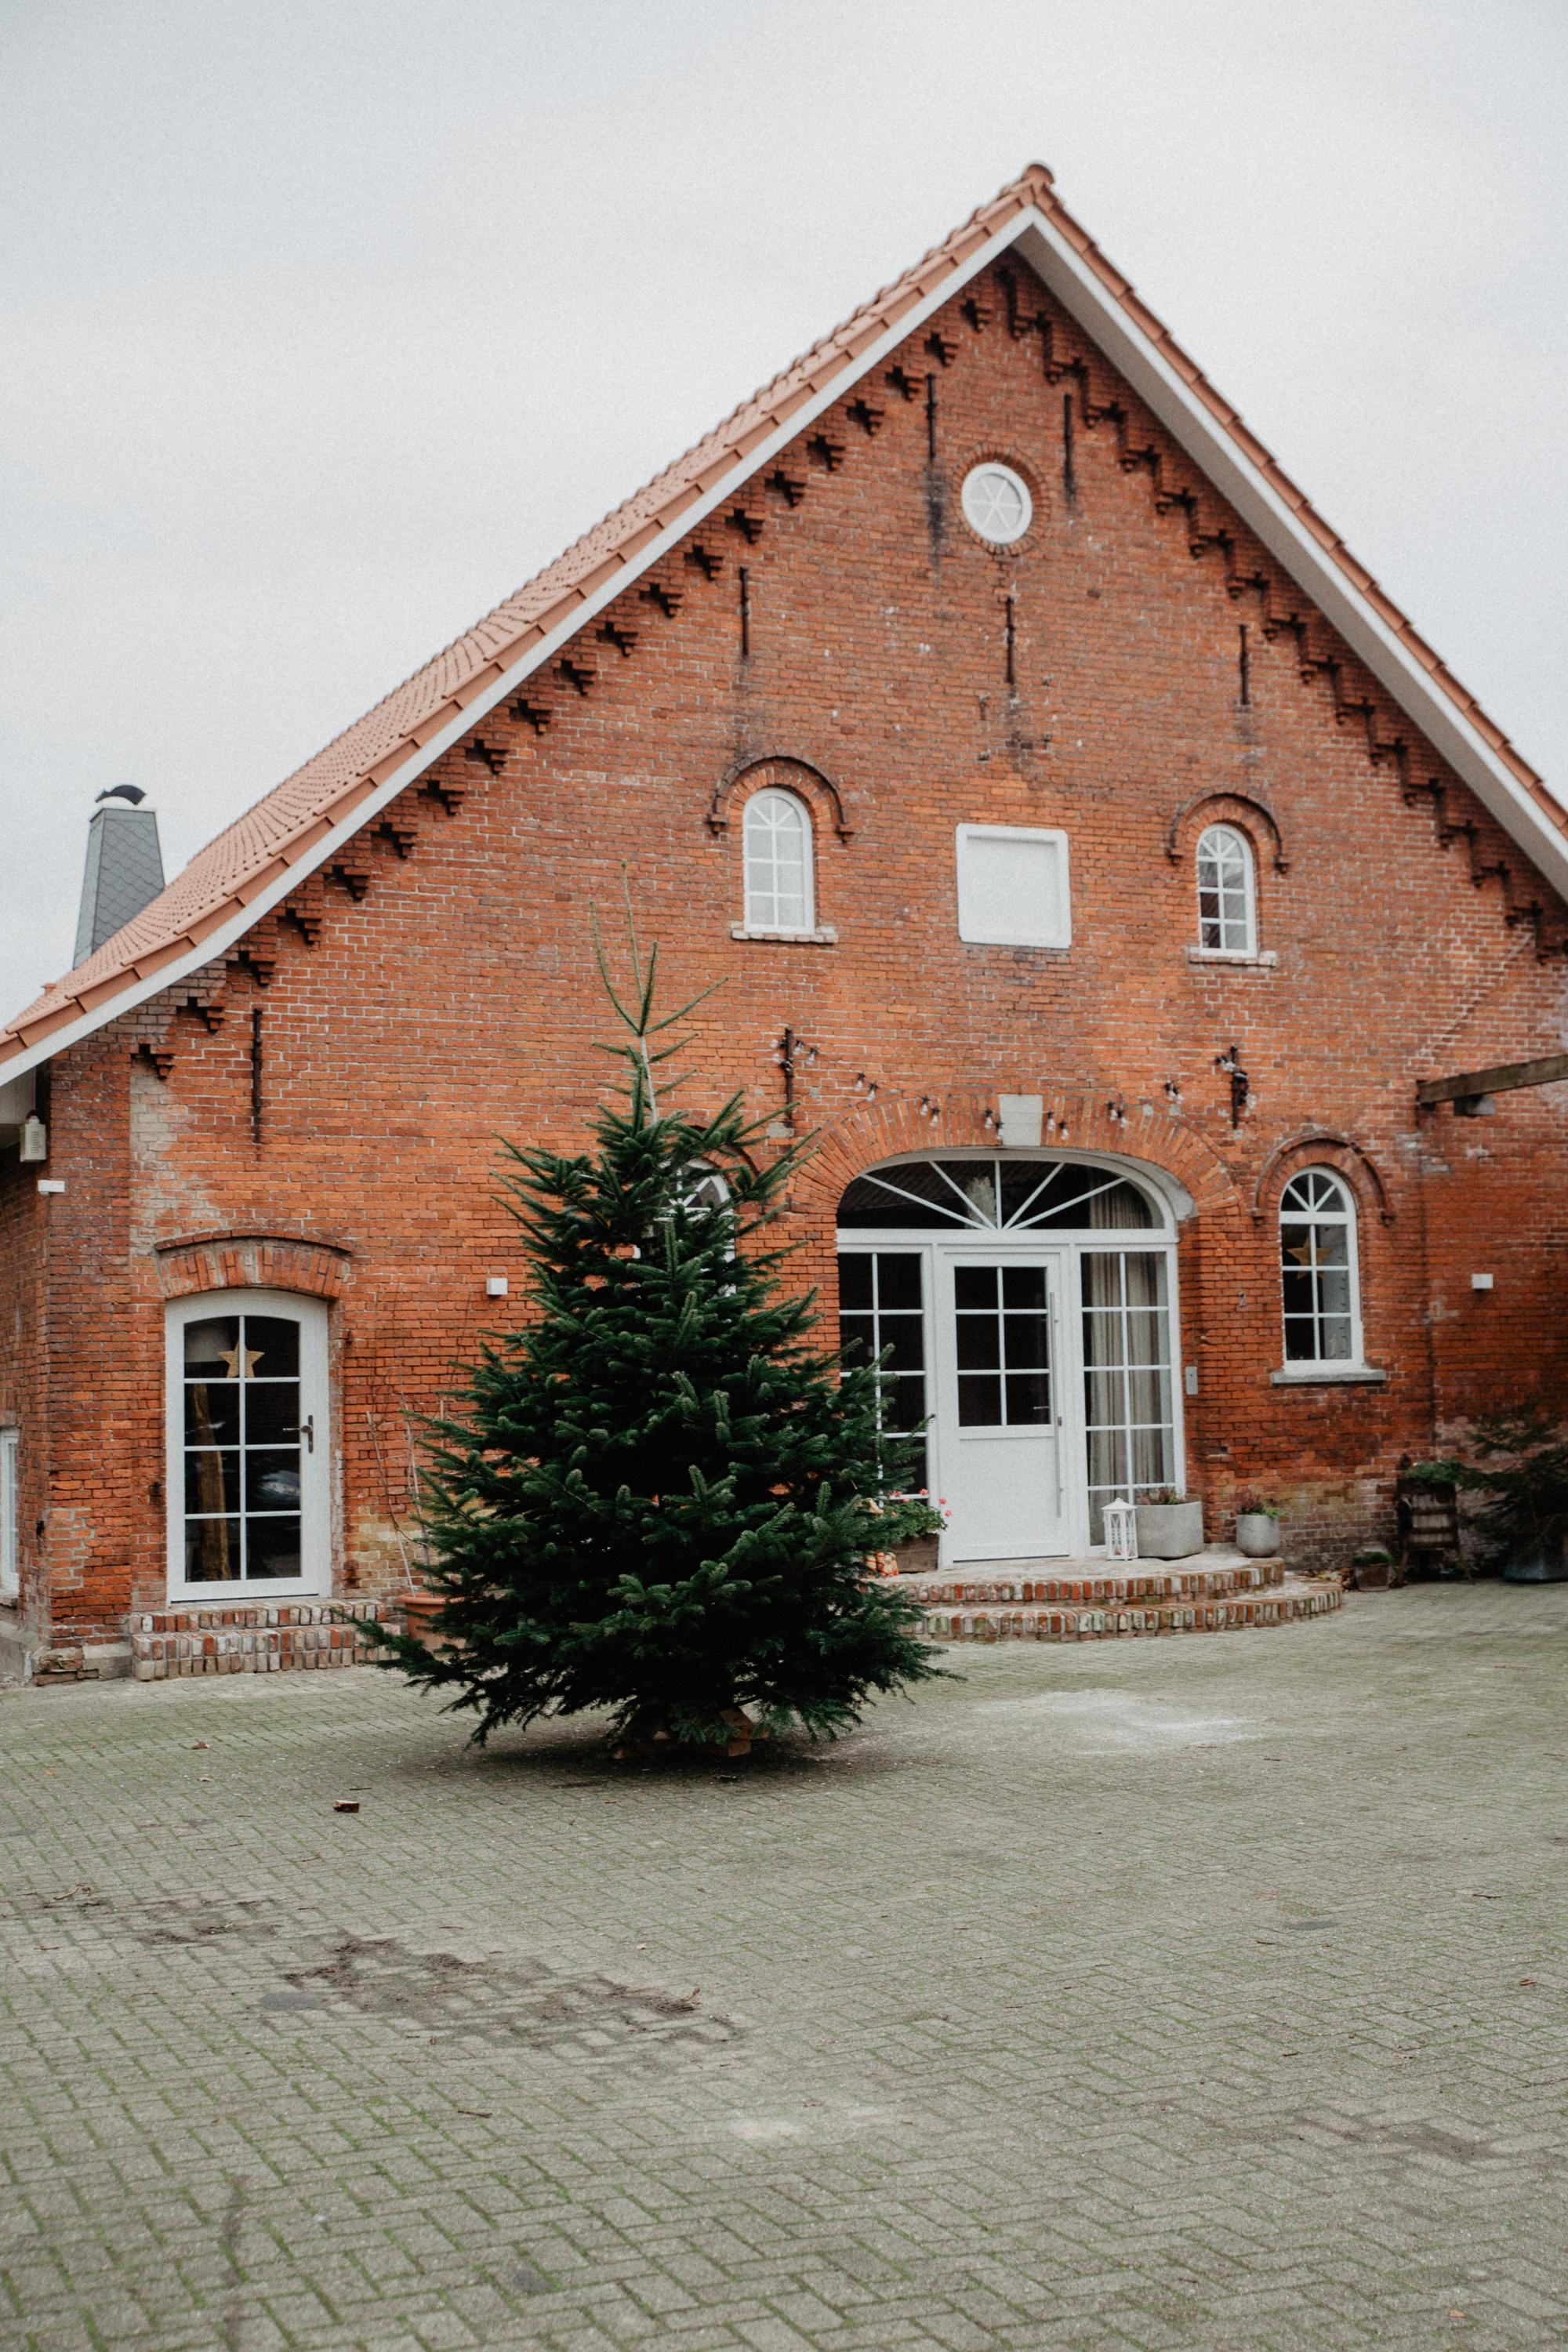 Unser Tannenbaum 🖤
#xmas #weihnachten #tannebaum #weihnachtsbaum #resthof